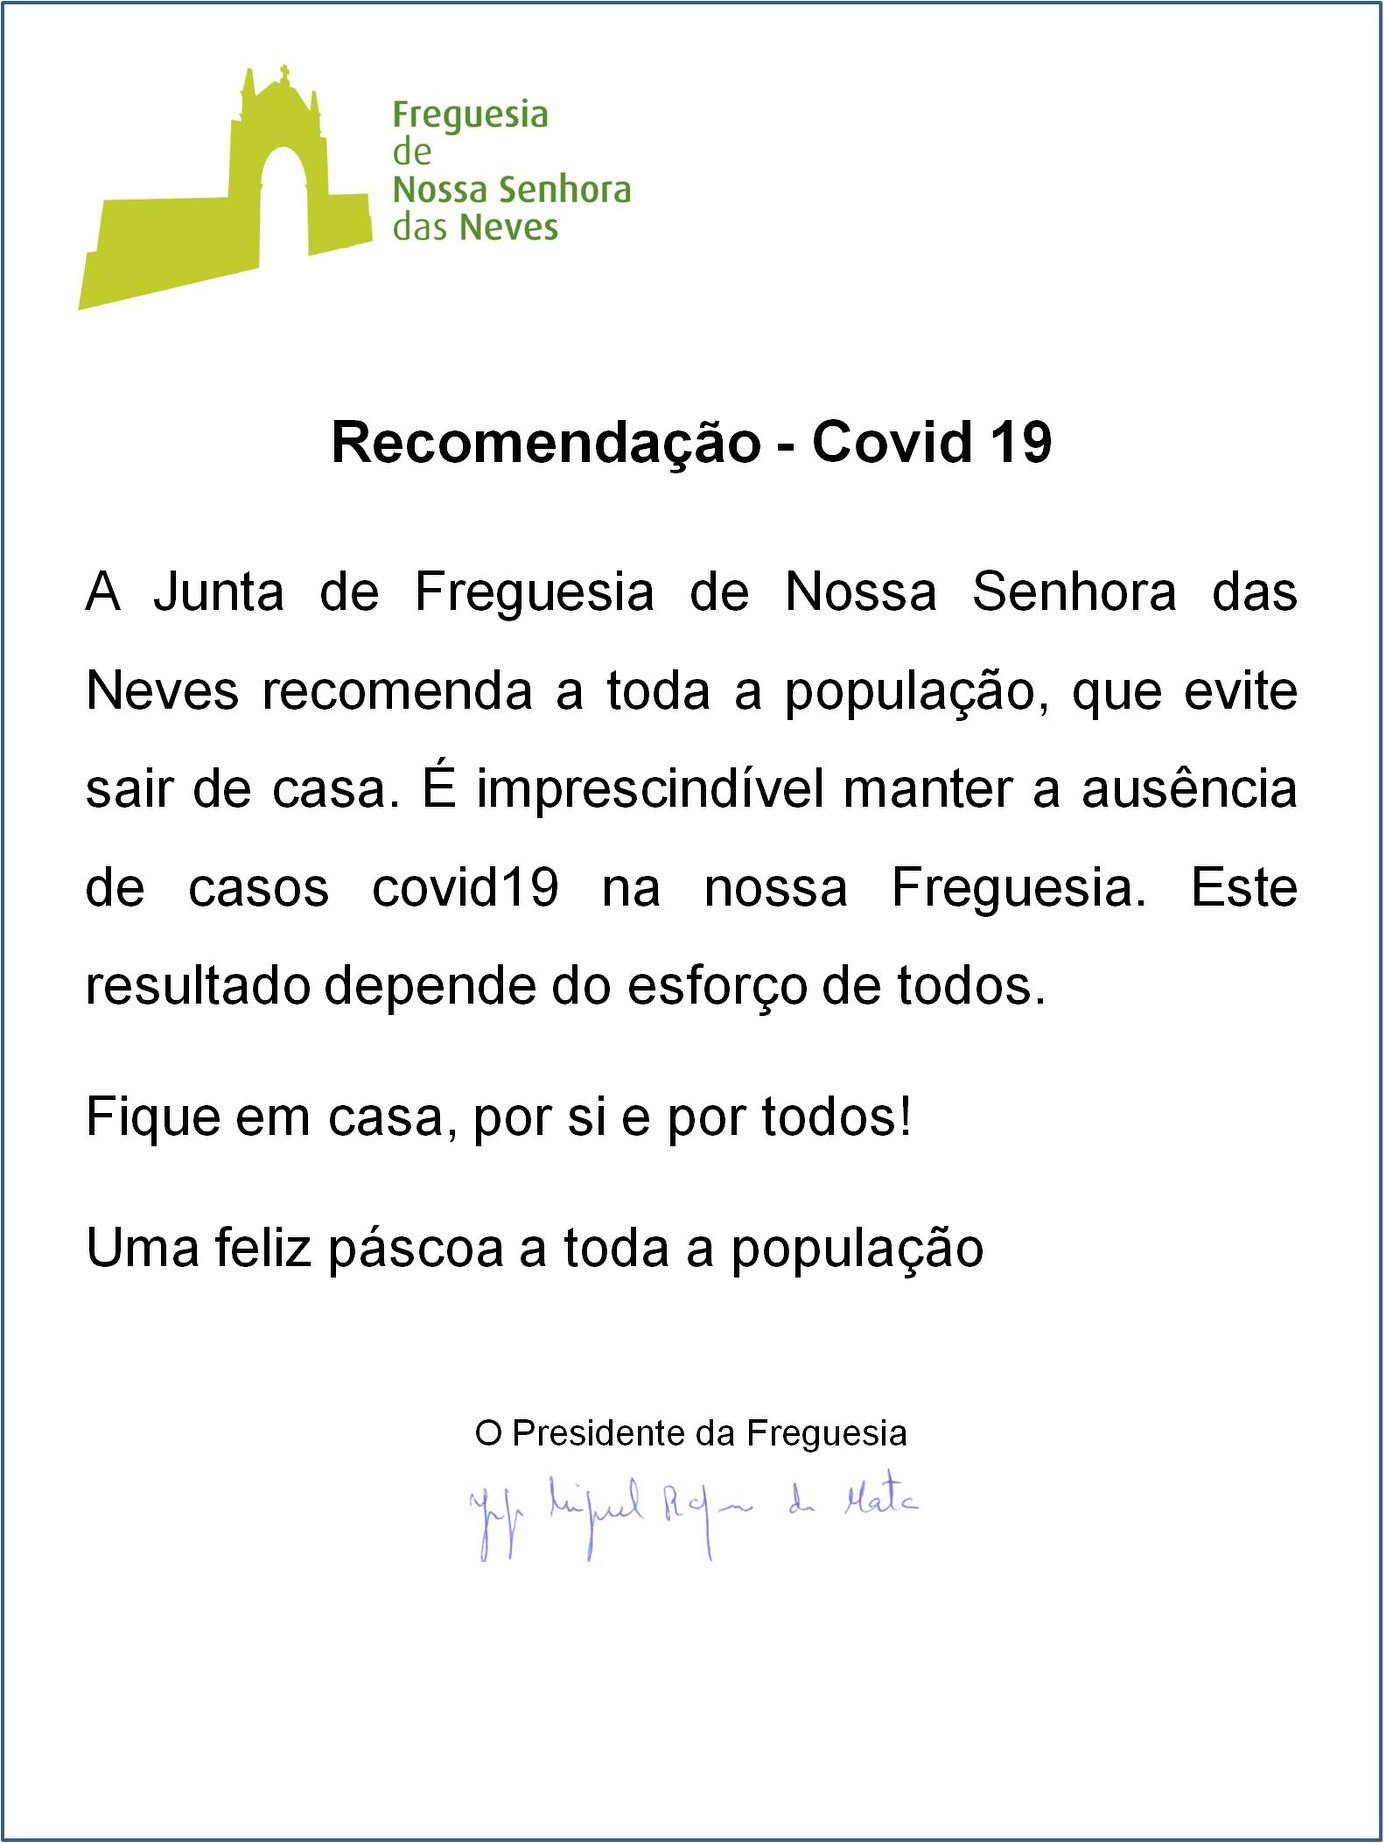 Recomendações COVID-19